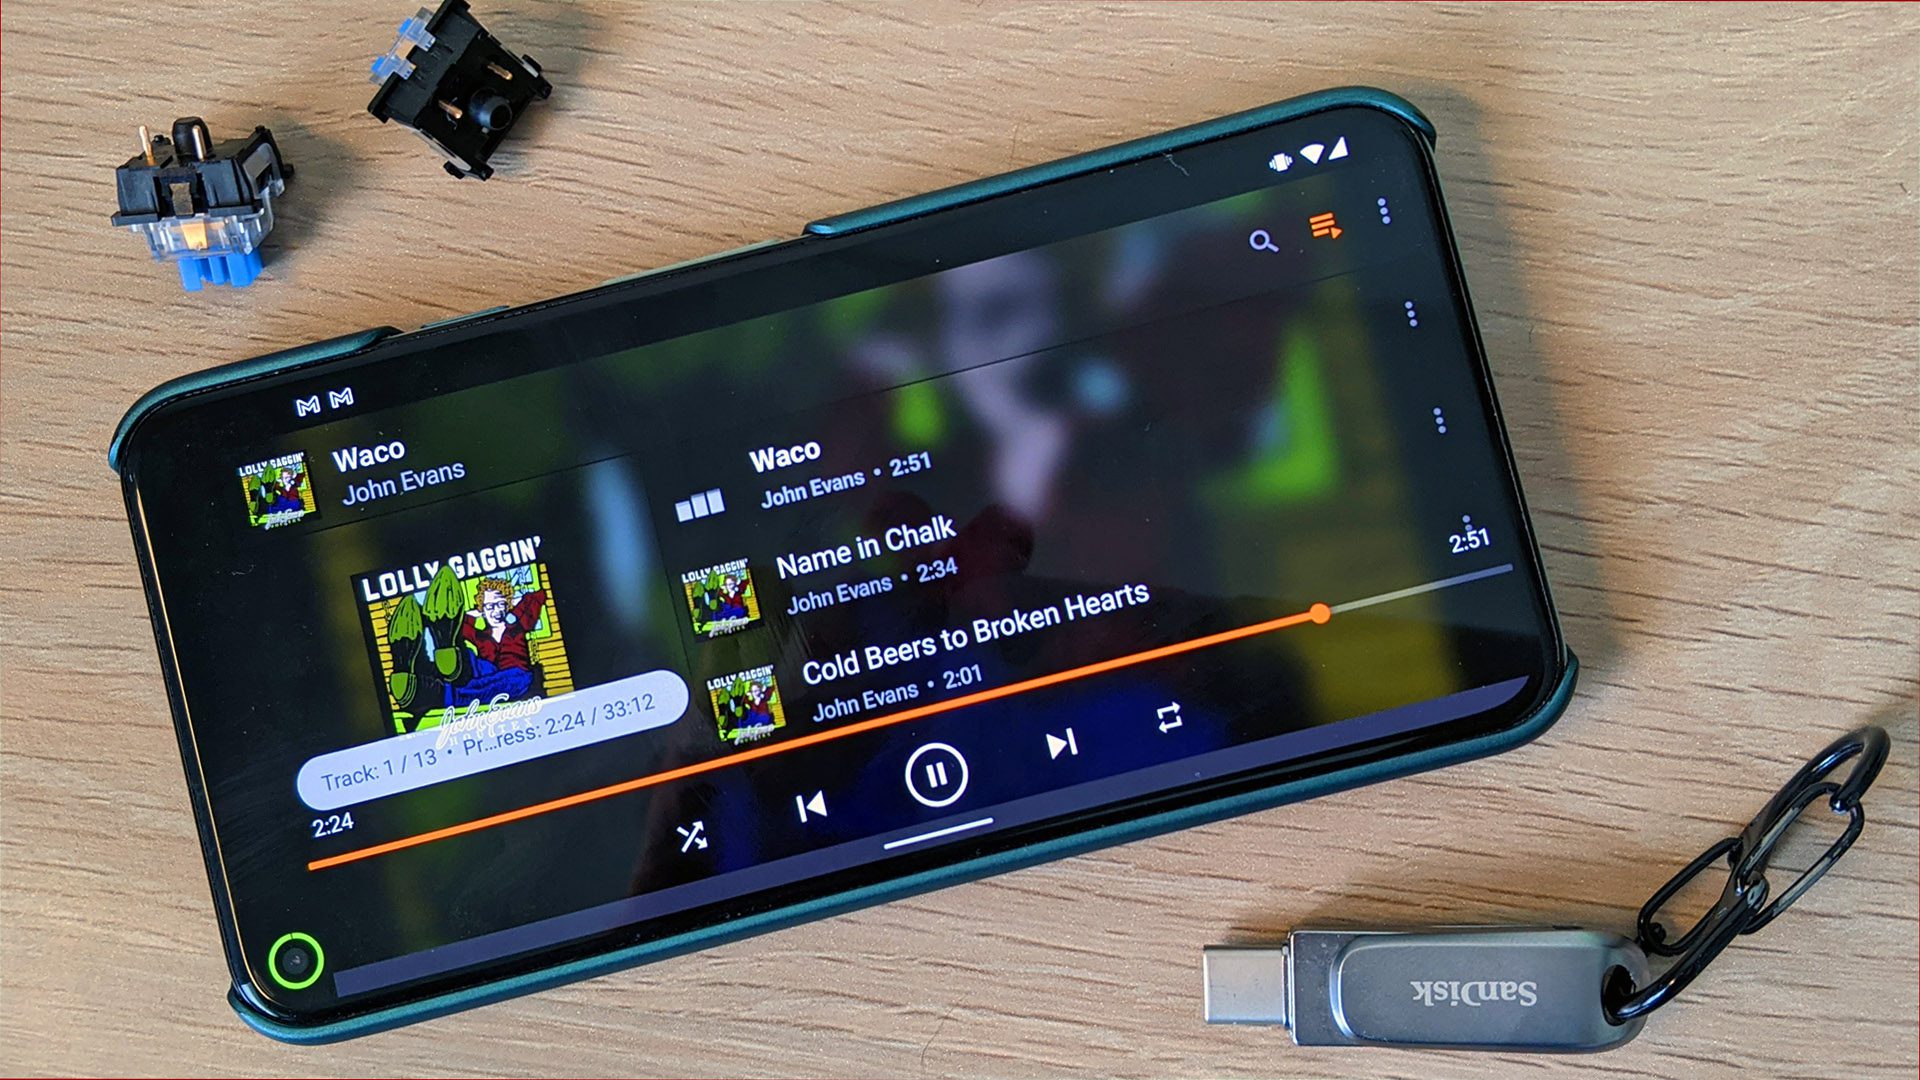 VLC Media Player belebt seine Android Auto-App im neuesten Update 35